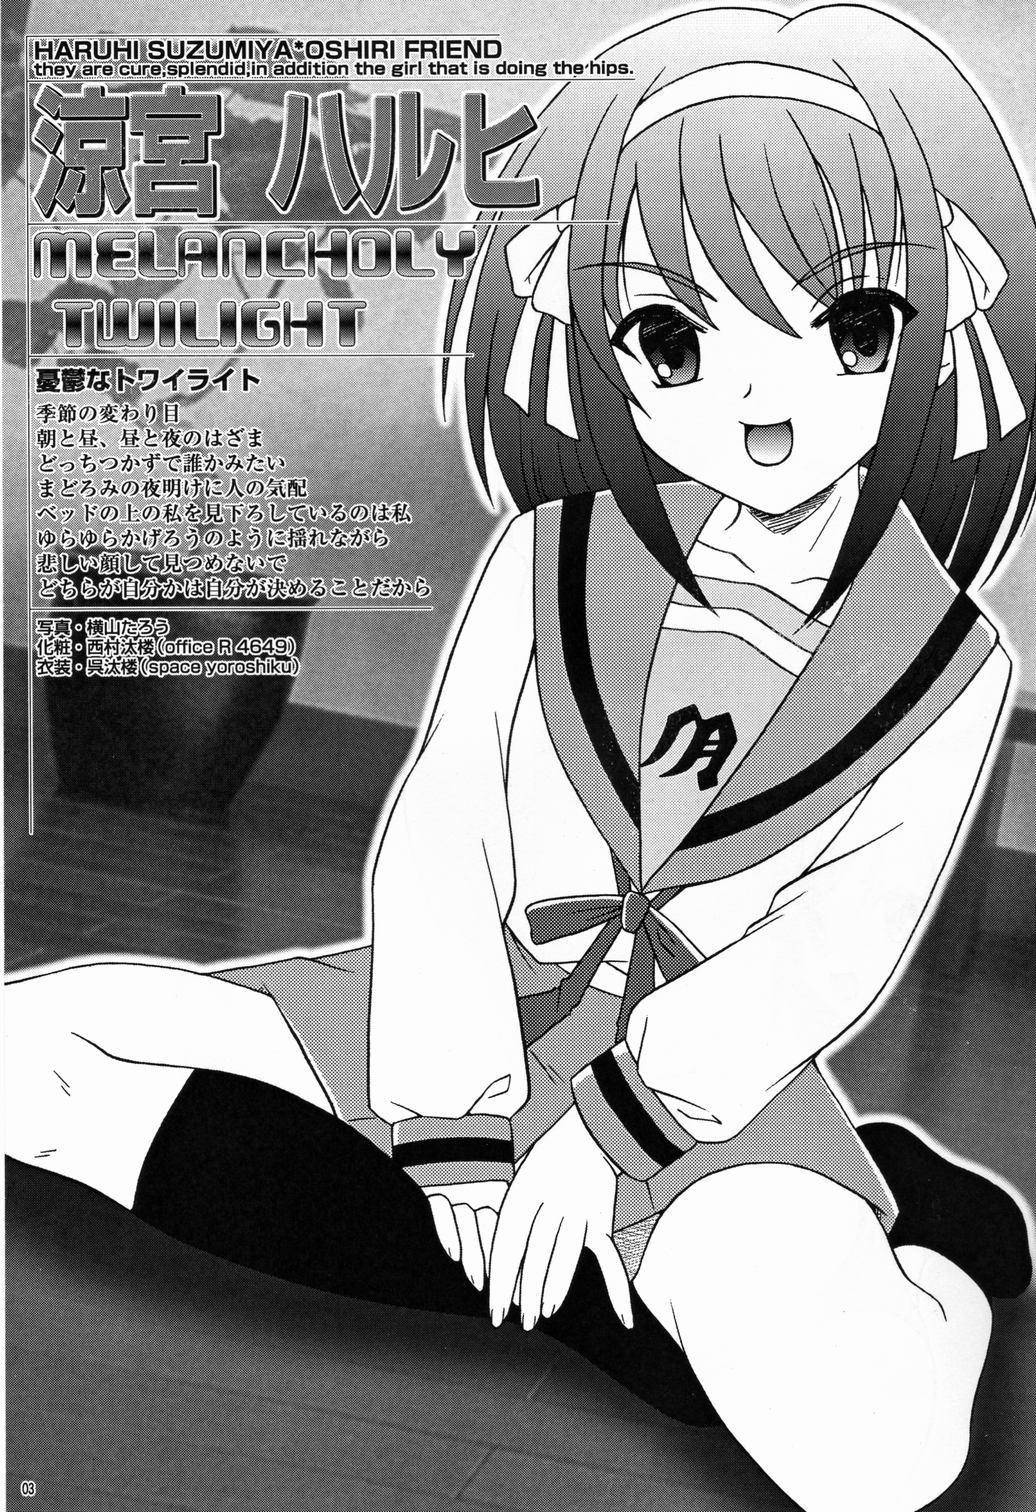 Dress Saku-chan Club Vol. 6 - Neon genesis evangelion Fate stay night Keroro gunsou Bush - Page 3